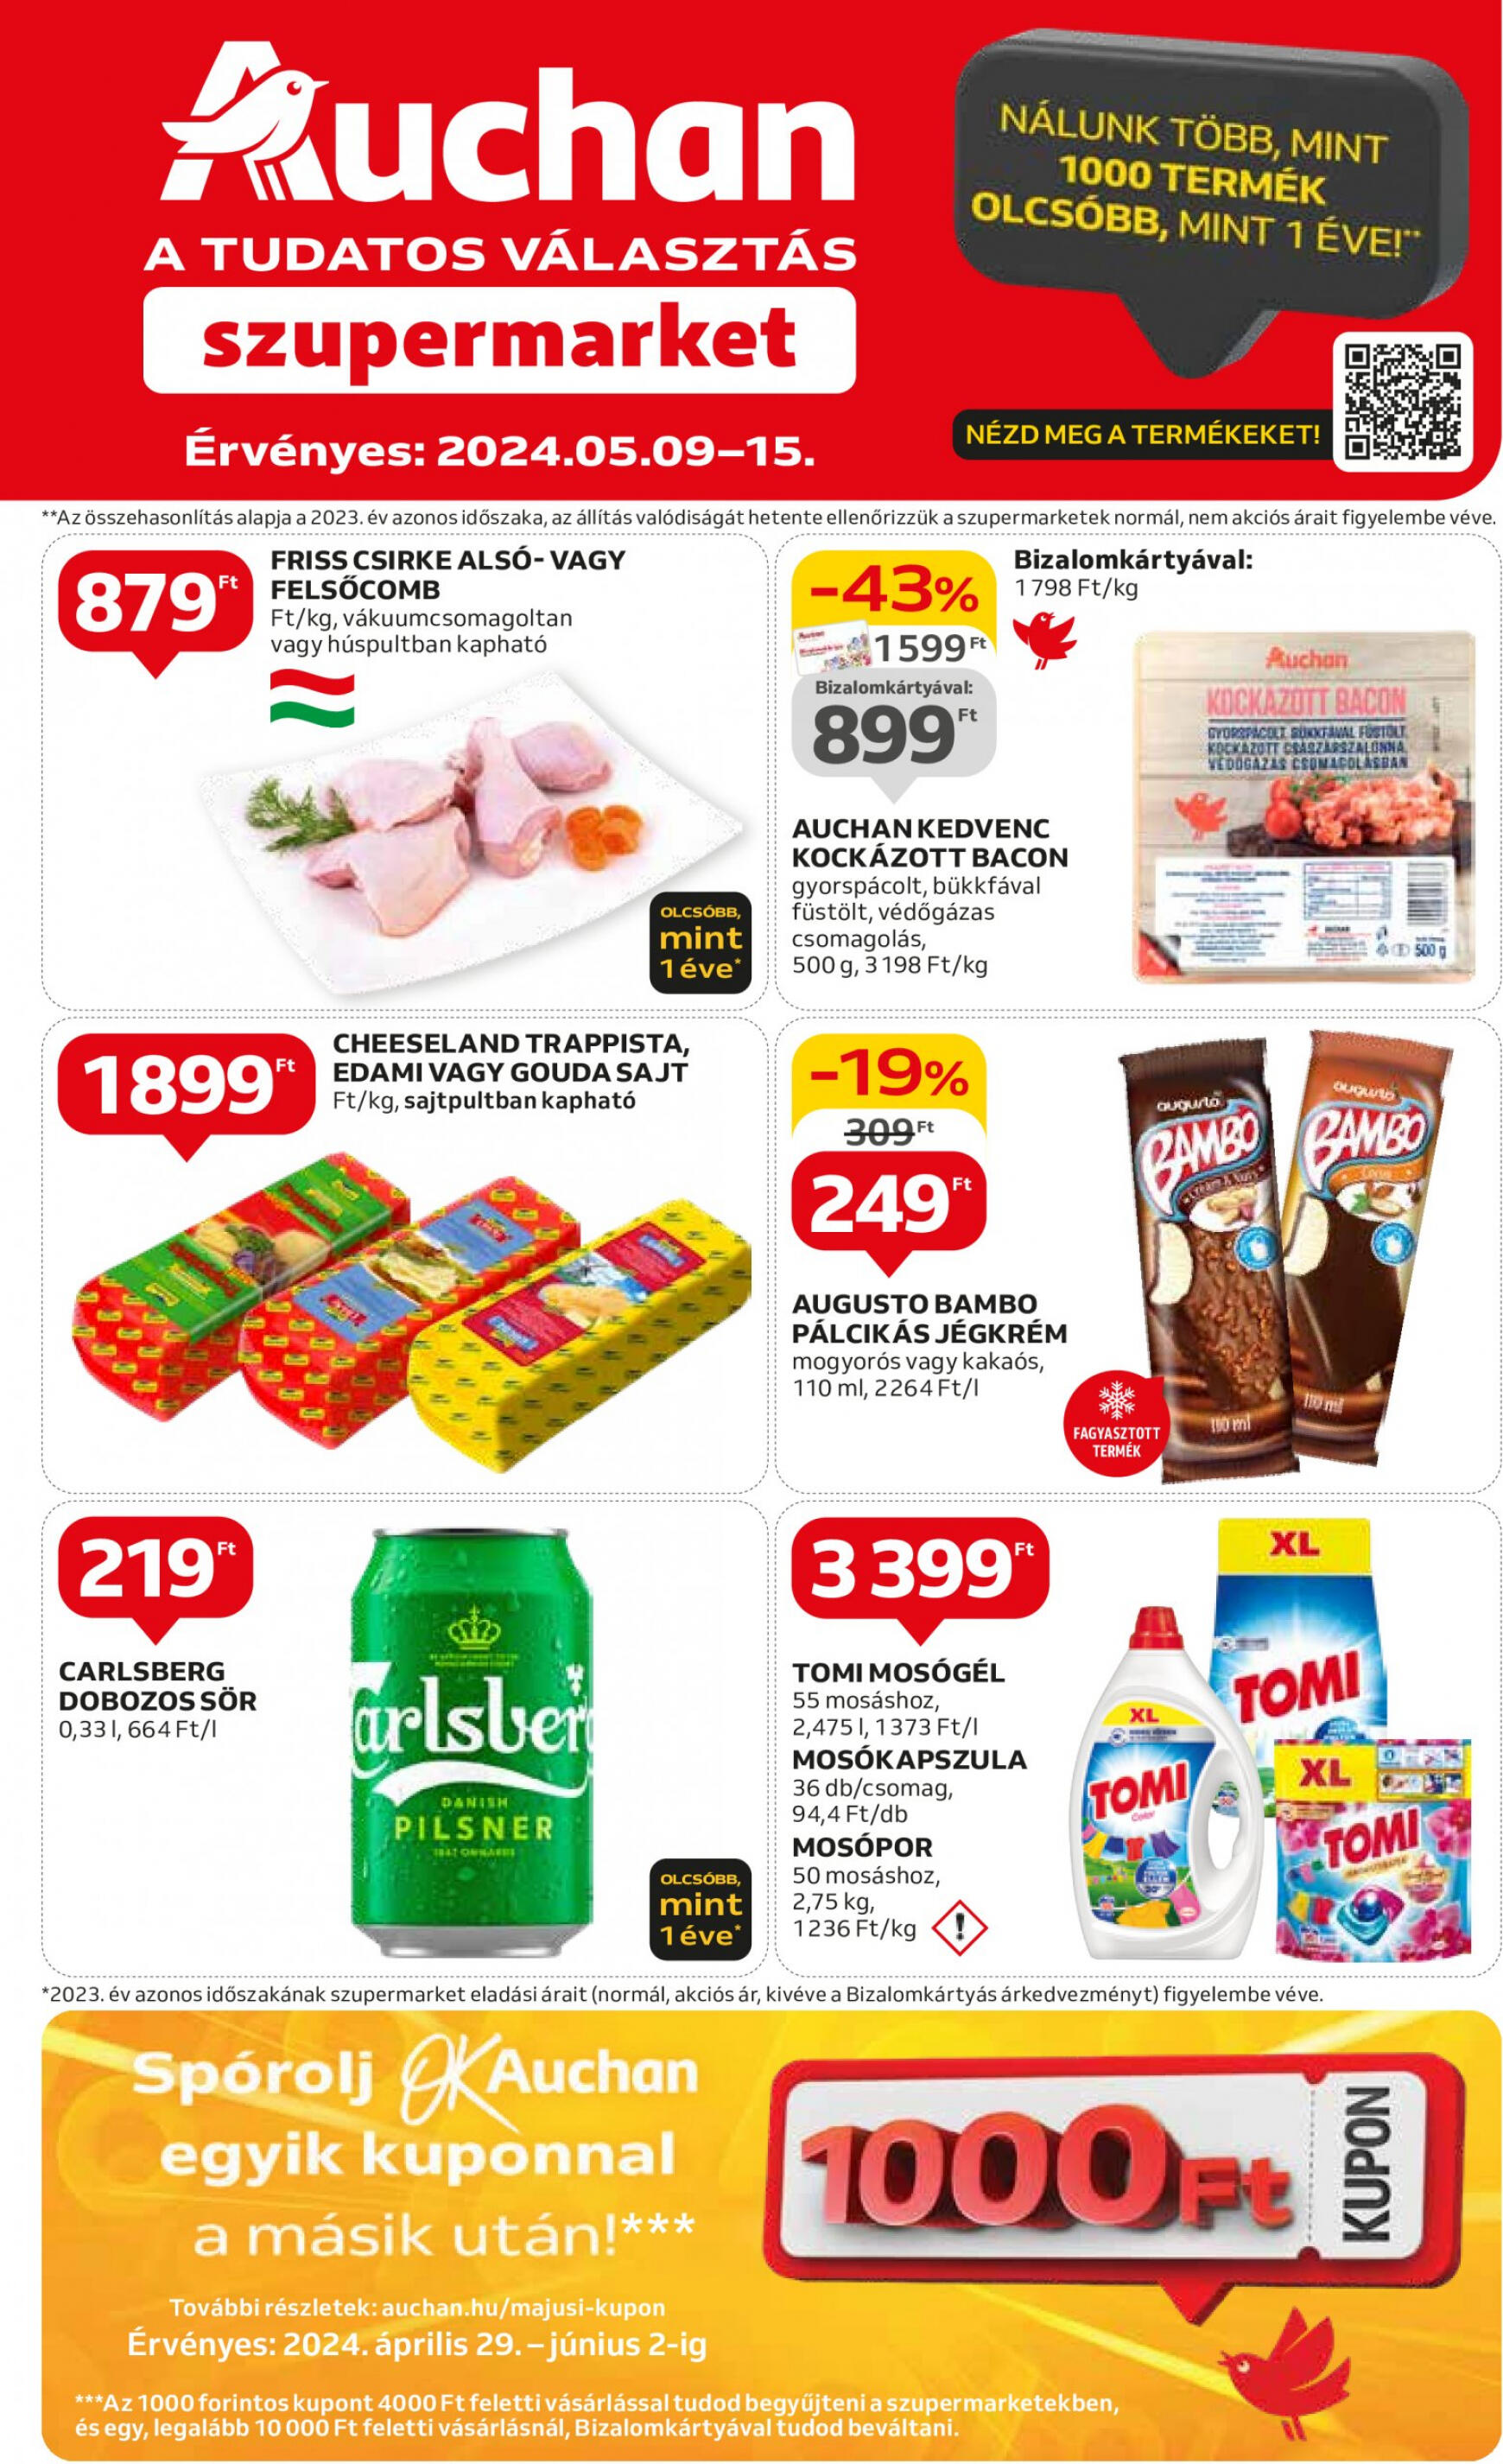 auchan - Aktuális újság Auchan szupermarket 05.09. - 05.15.